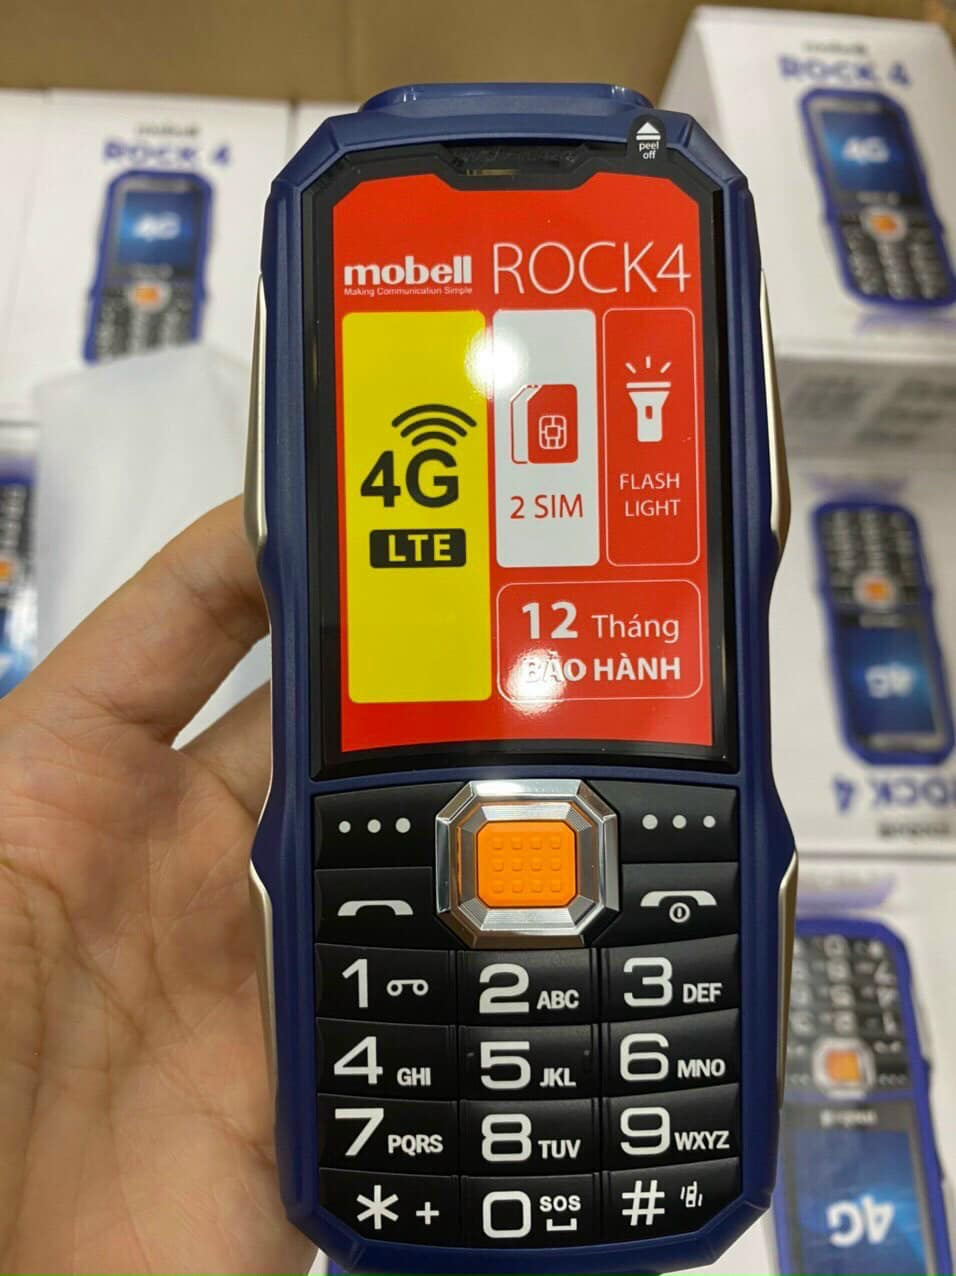 Hình ảnh Điện thoại Mobell Rock 4 4G , Pin 3250mah , Loa Siêu lớn - Hàng chính hãng